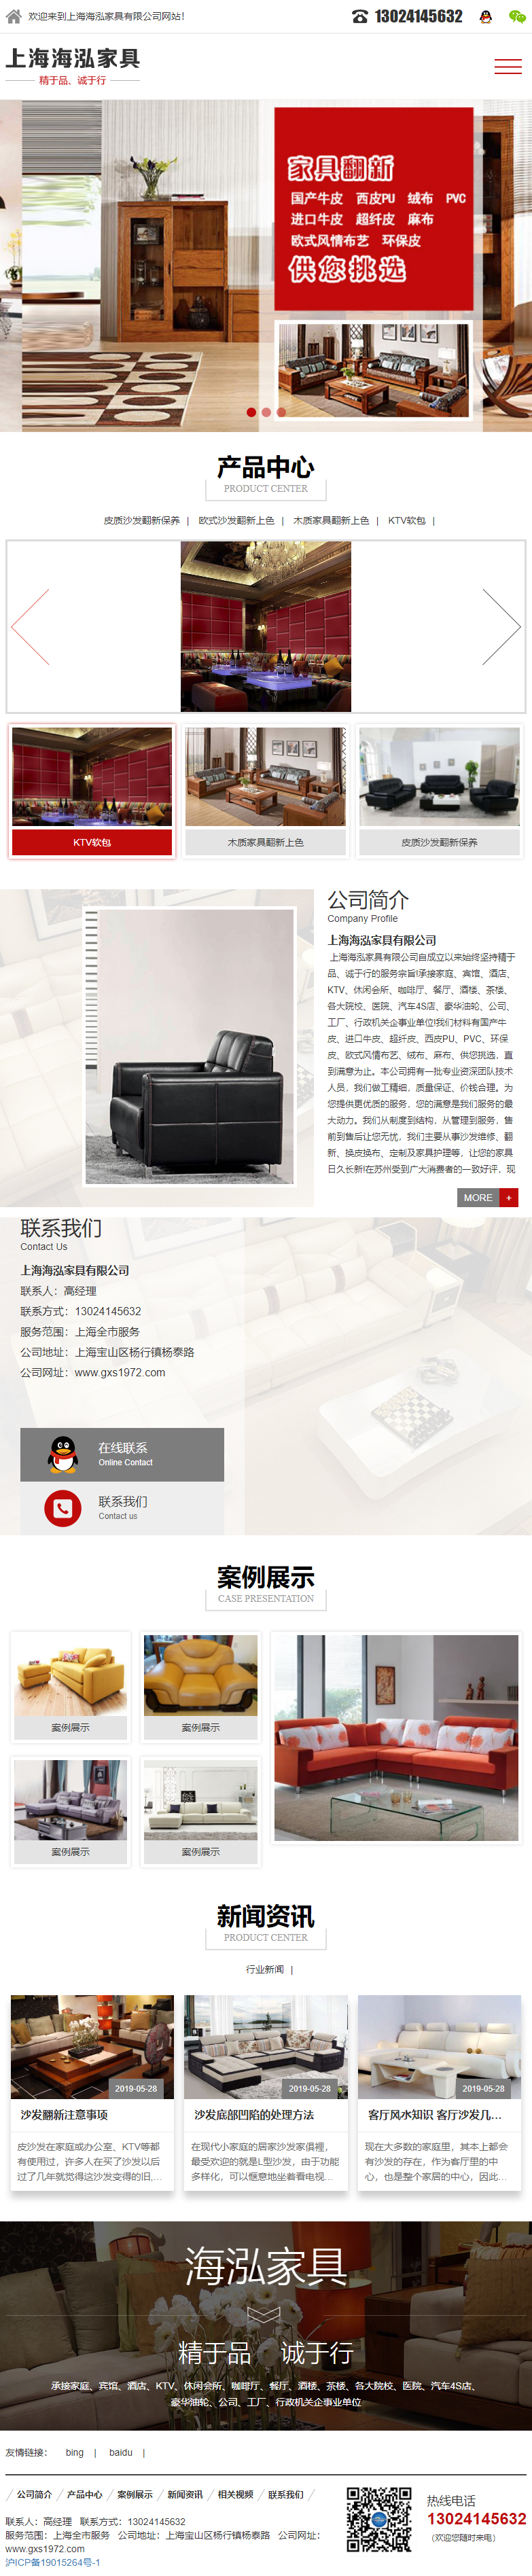 上海海泓家具有限公司网站案例